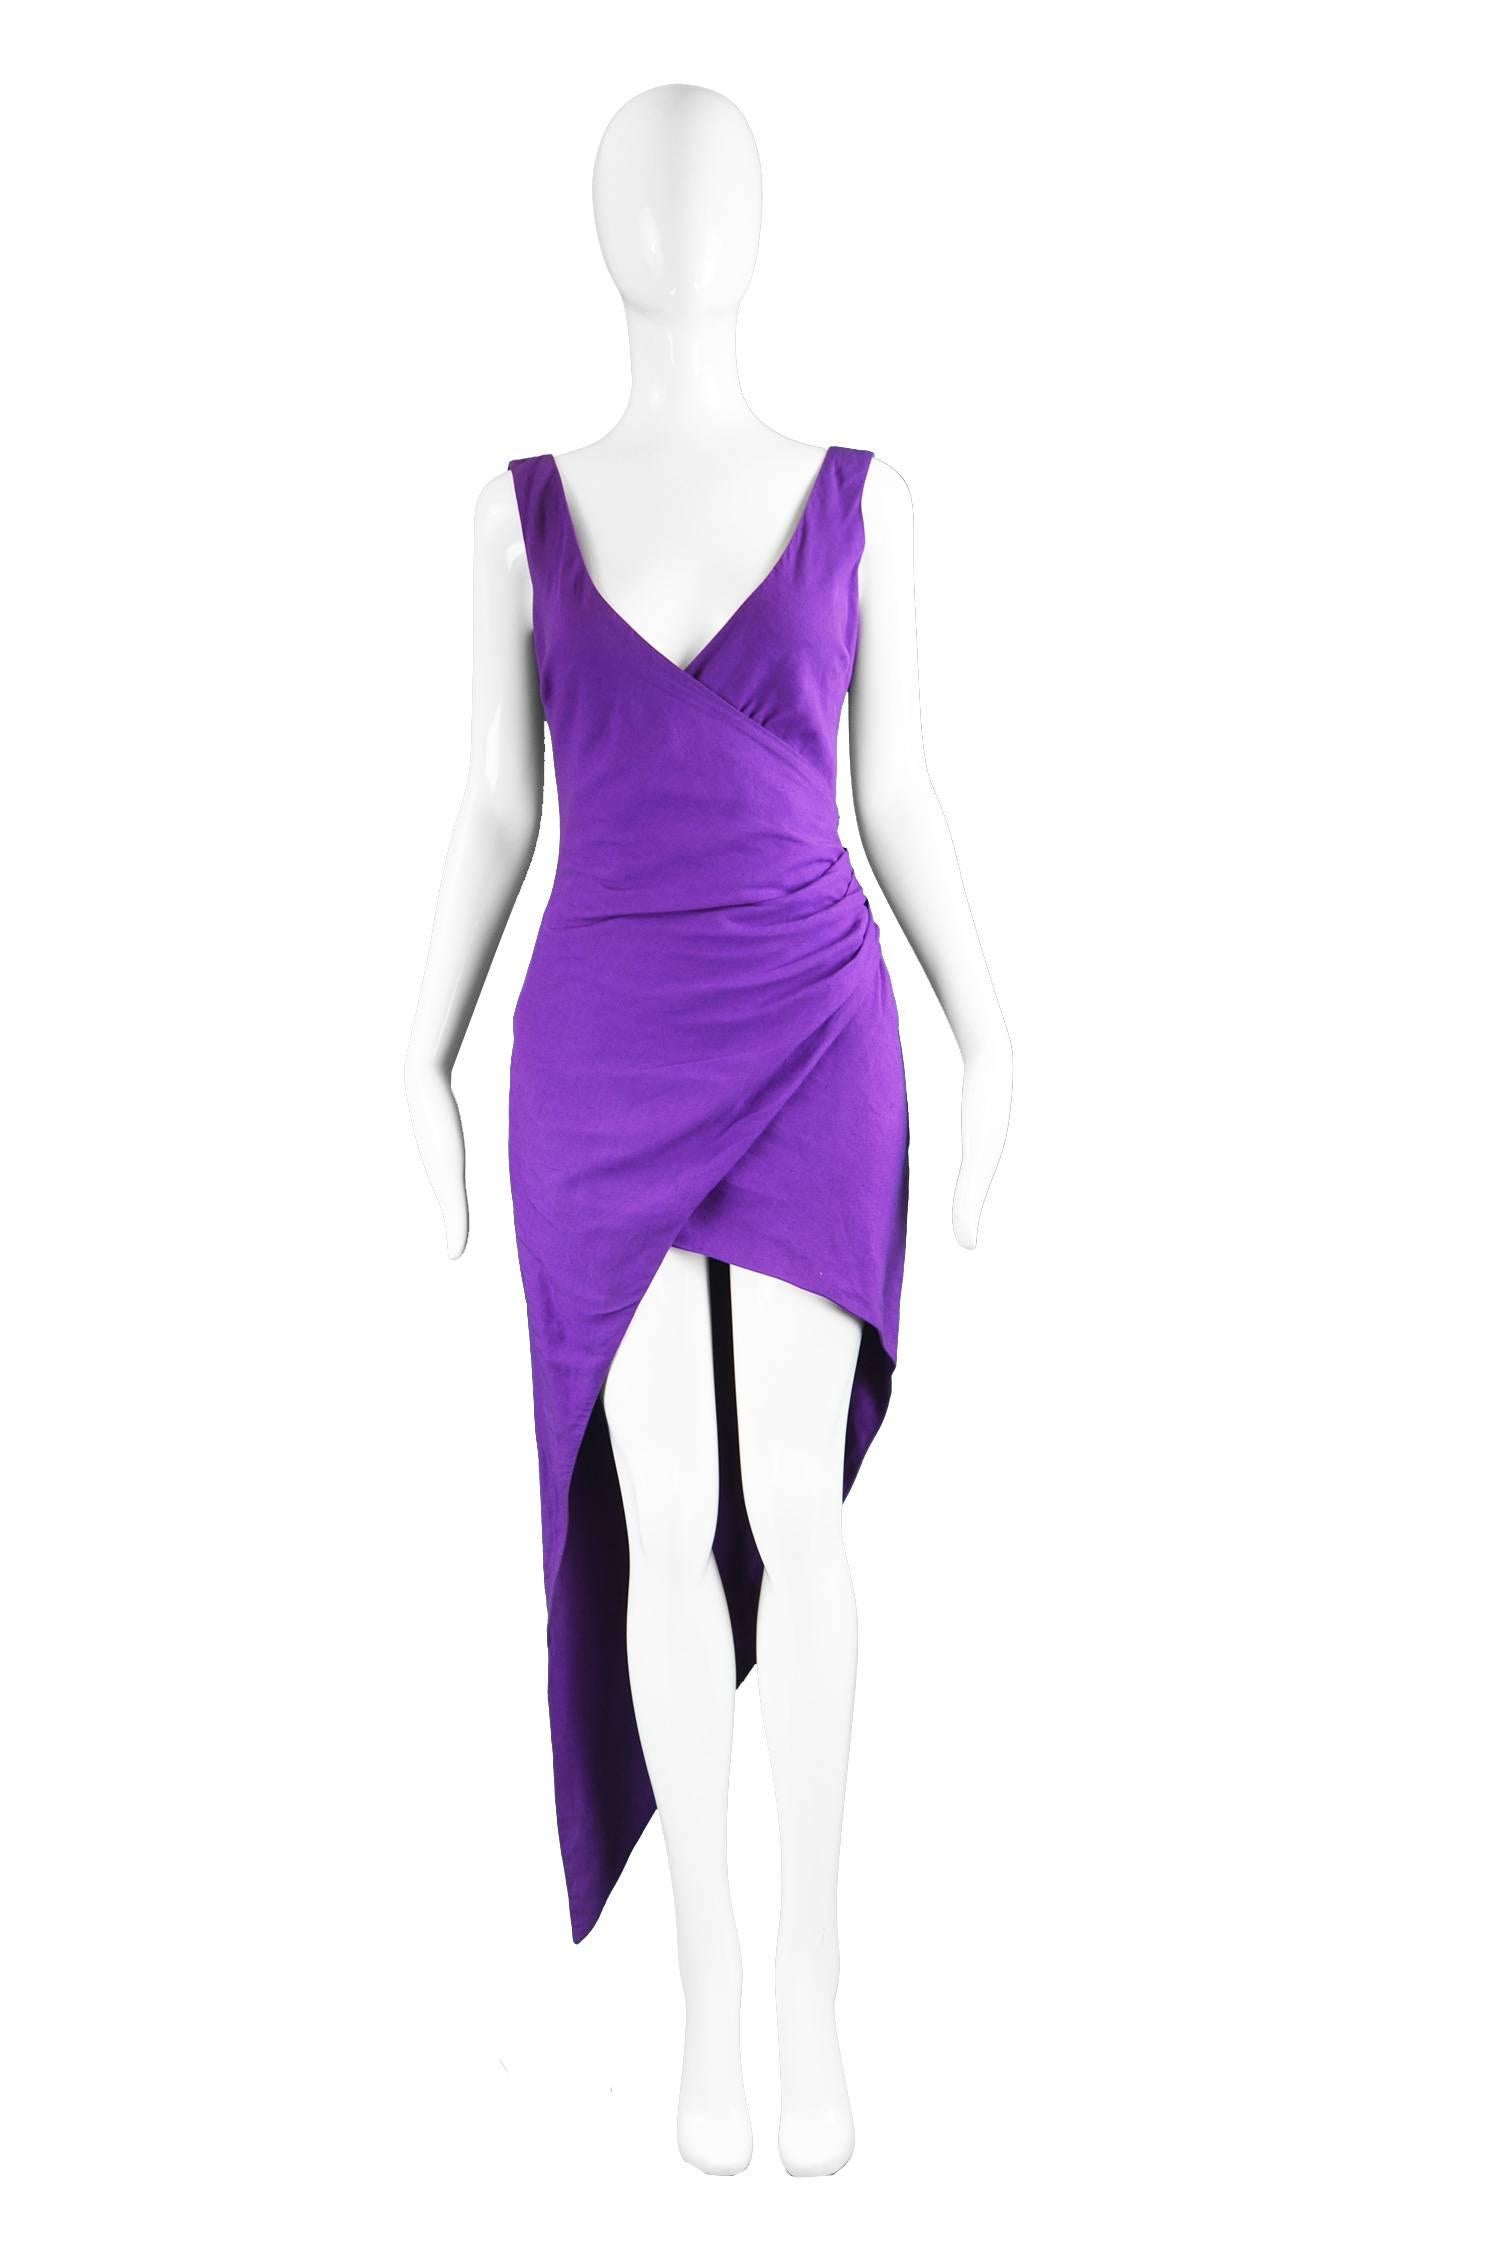 Byblos Vintage Asymmetric Purple Linen Mini Party Dress, 1990s

Estimated Size: UK 8-10/ US 4-6/ EU 36-38 (Please check measurements). 
Bust - 34” / 86cm 
Waist - 26” / 66cm
Hips - 38” / 96cm
Length (Minus train) - 34” / 86cm 
Length (To bottom of